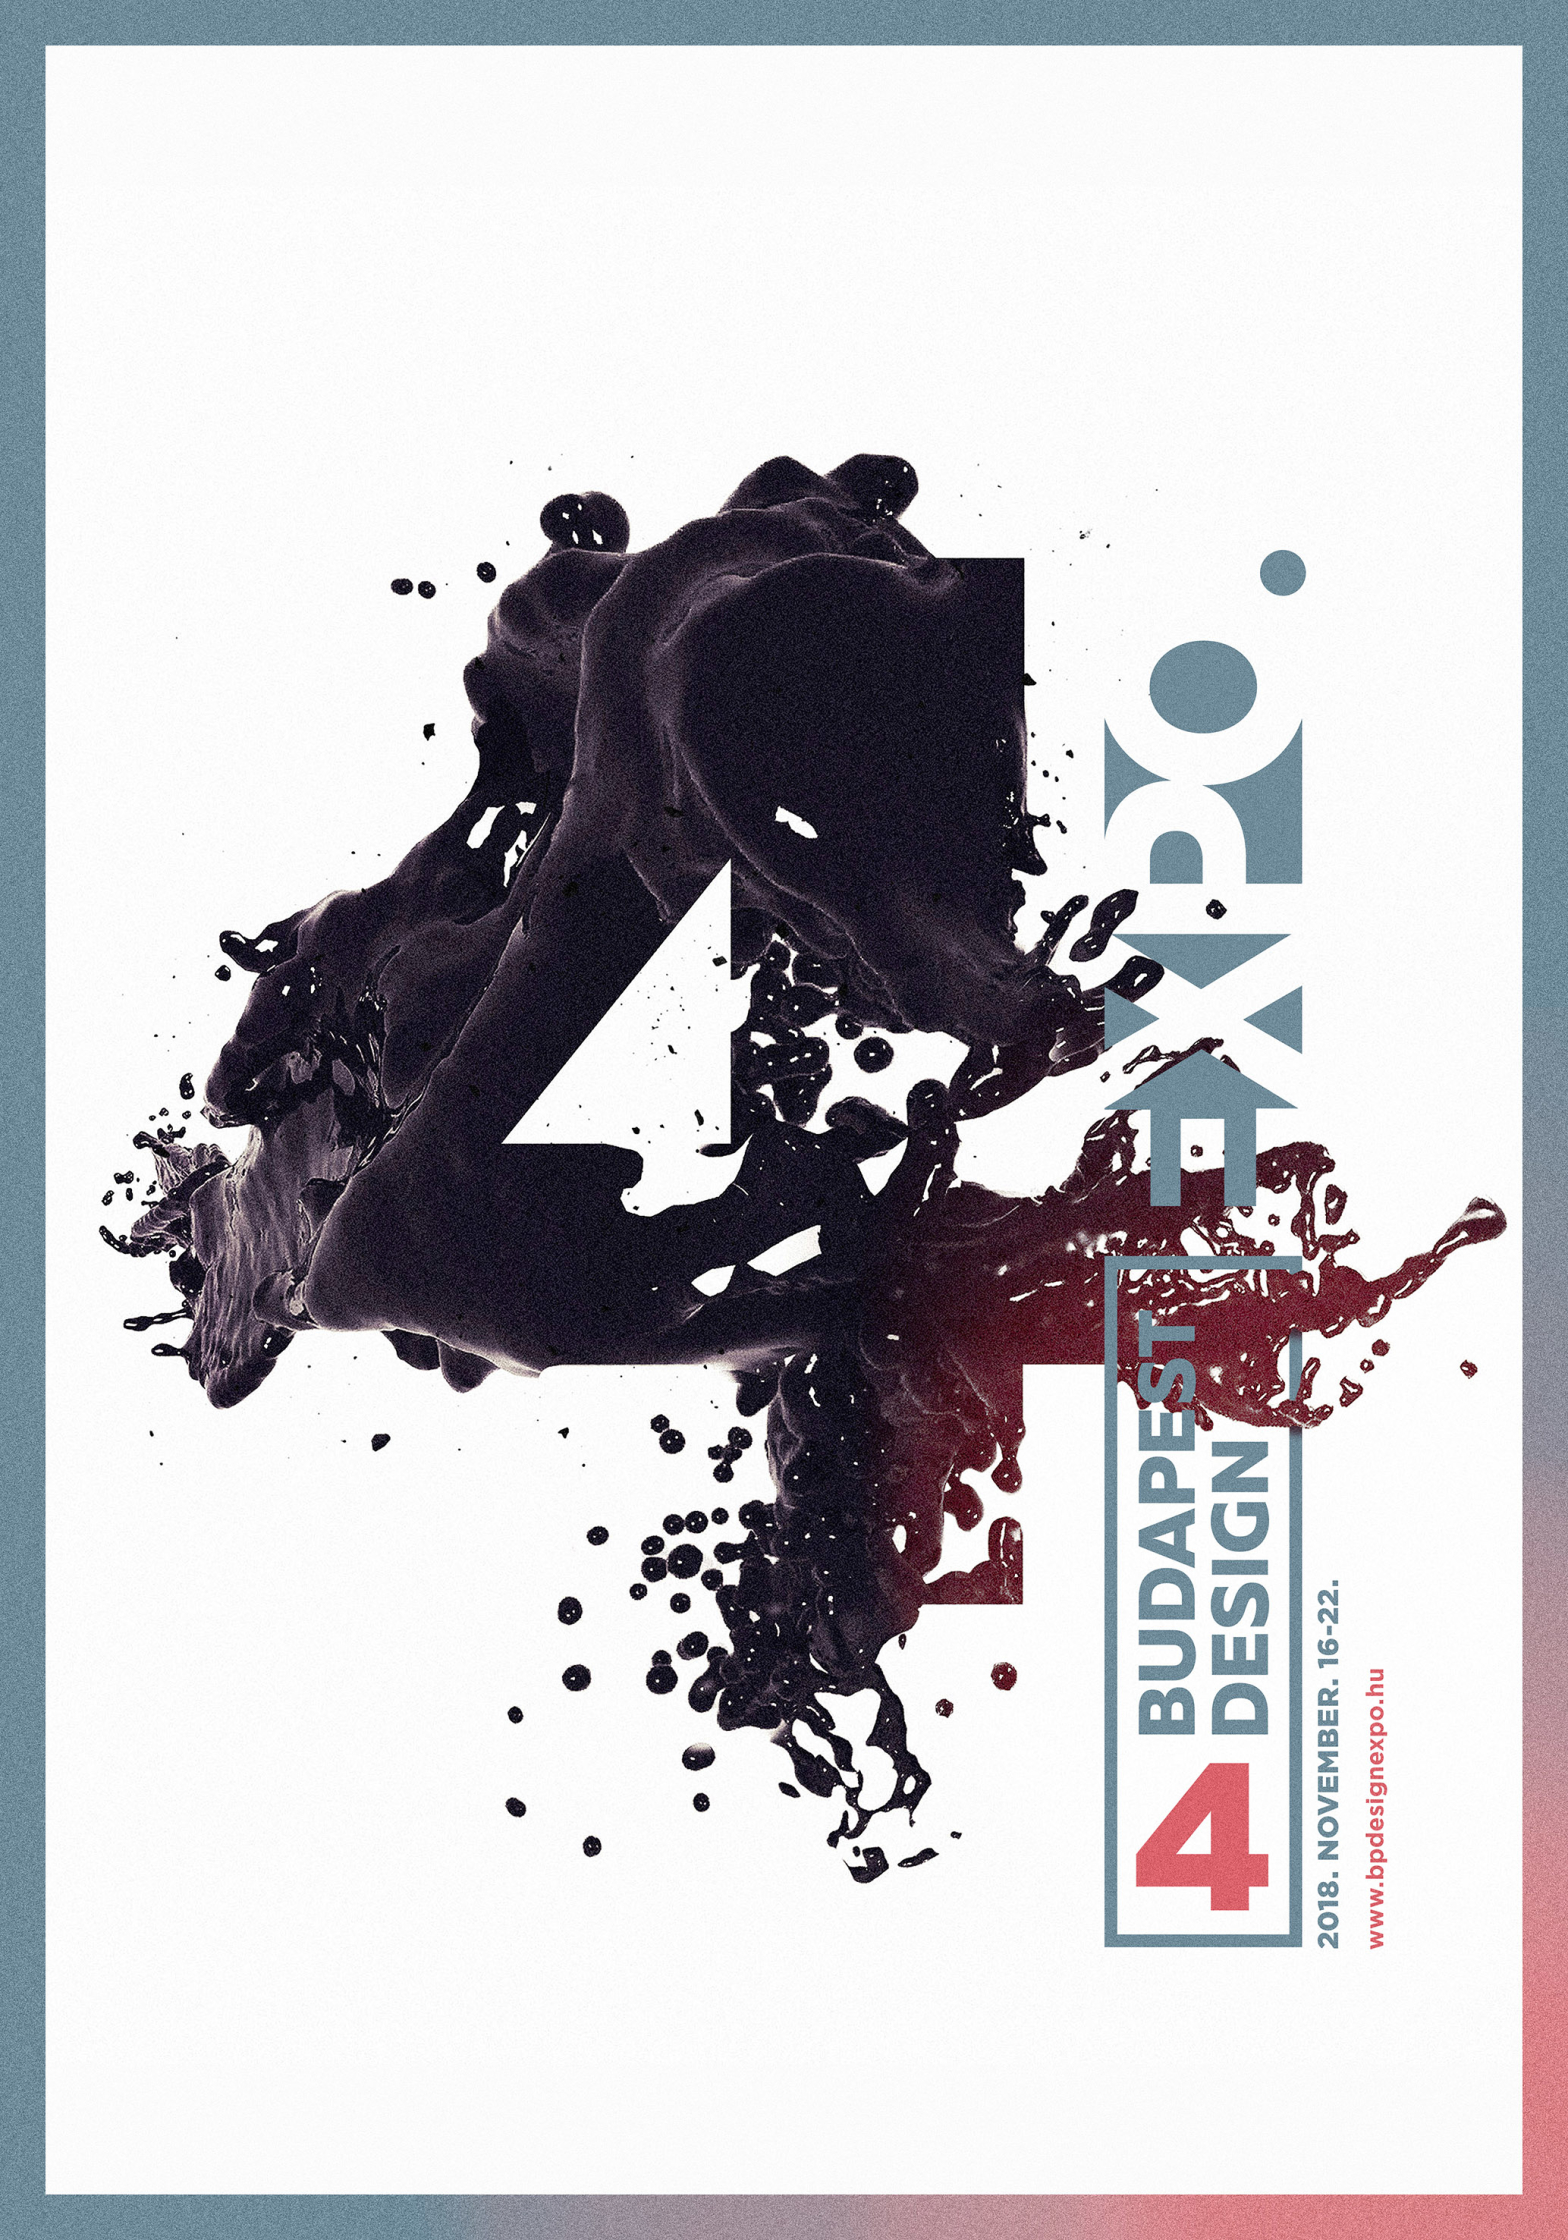 Budapest design expo poster.jpg